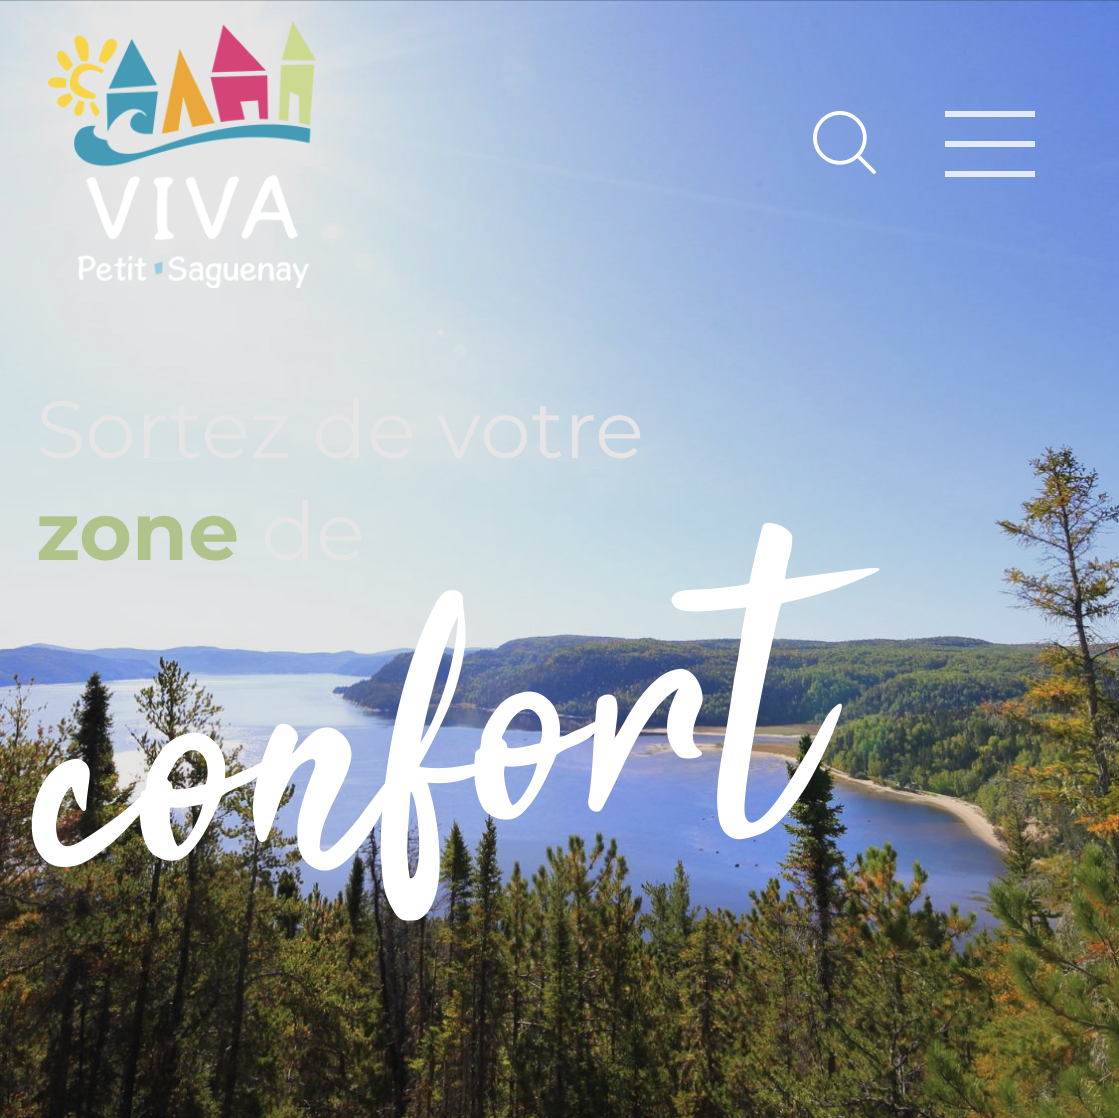 Viva Petit-Saguenay